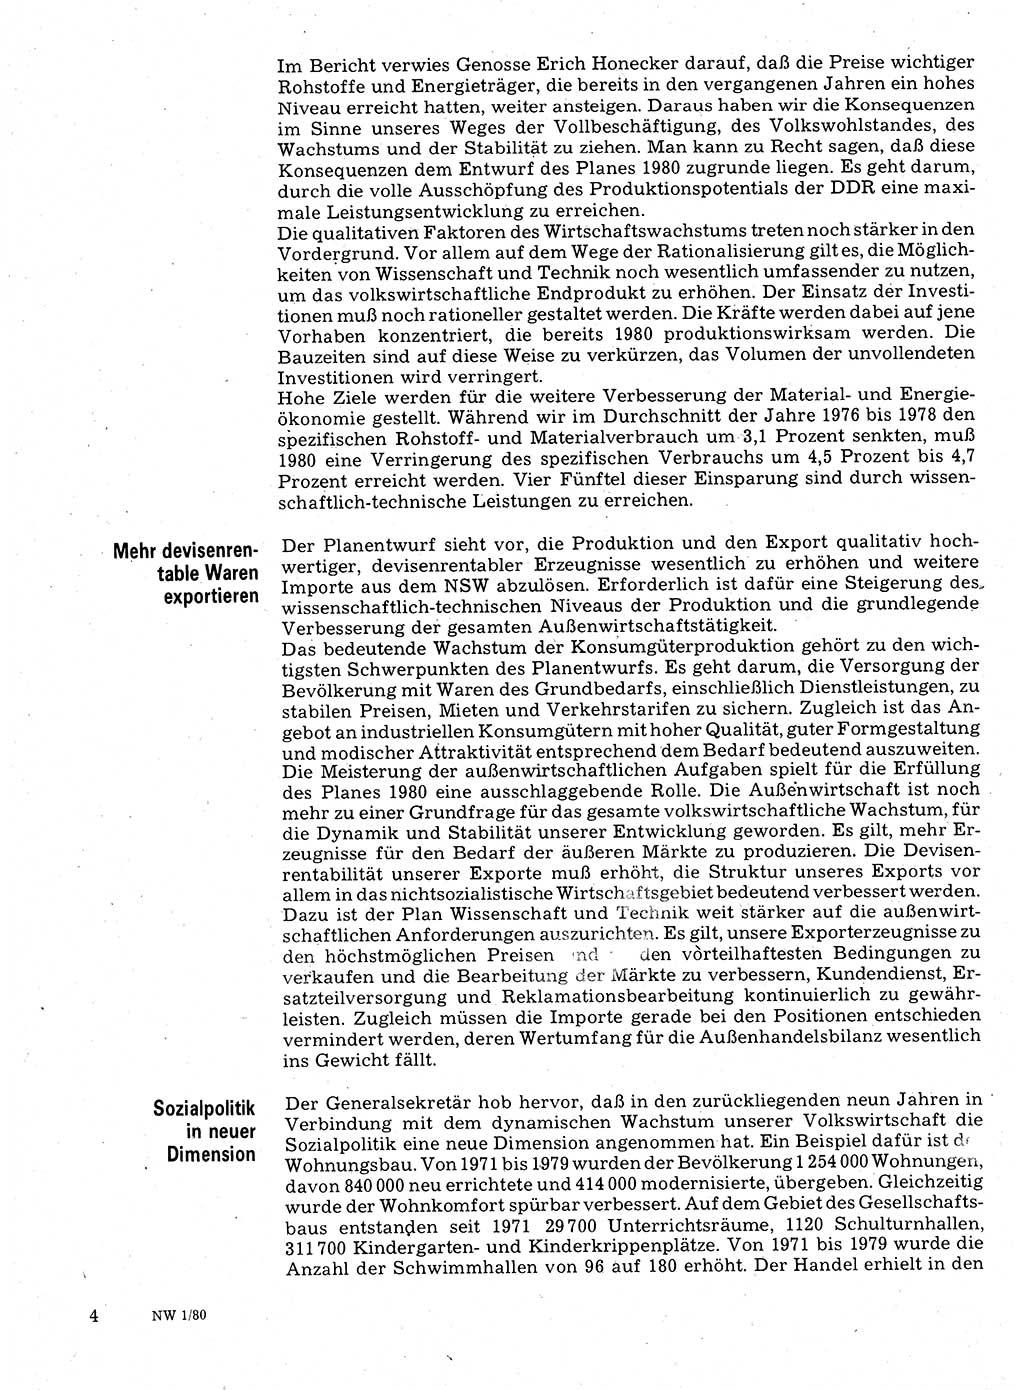 Neuer Weg (NW), Organ des Zentralkomitees (ZK) der SED (Sozialistische Einheitspartei Deutschlands) für Fragen des Parteilebens, 35. Jahrgang [Deutsche Demokratische Republik (DDR)] 1980, Seite 4 (NW ZK SED DDR 1980, S. 4)